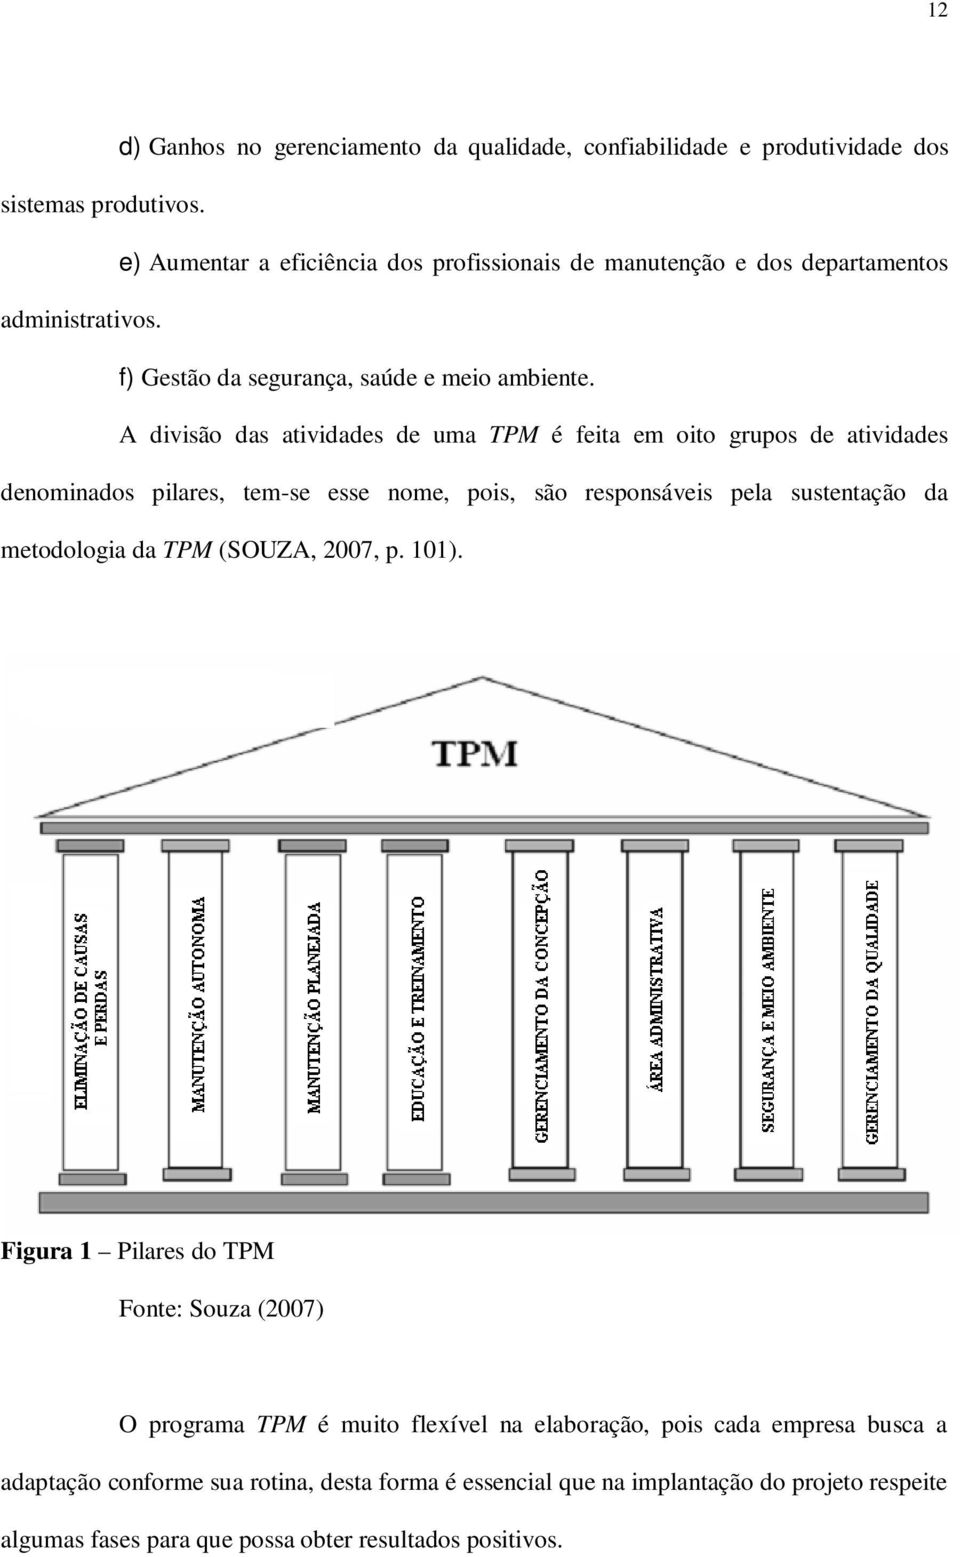 A divisão das atividades de uma TPM é feita em oito grupos de atividades denominados pilares, tem-se esse nome, pois, são responsáveis pela sustentação da metodologia da TPM